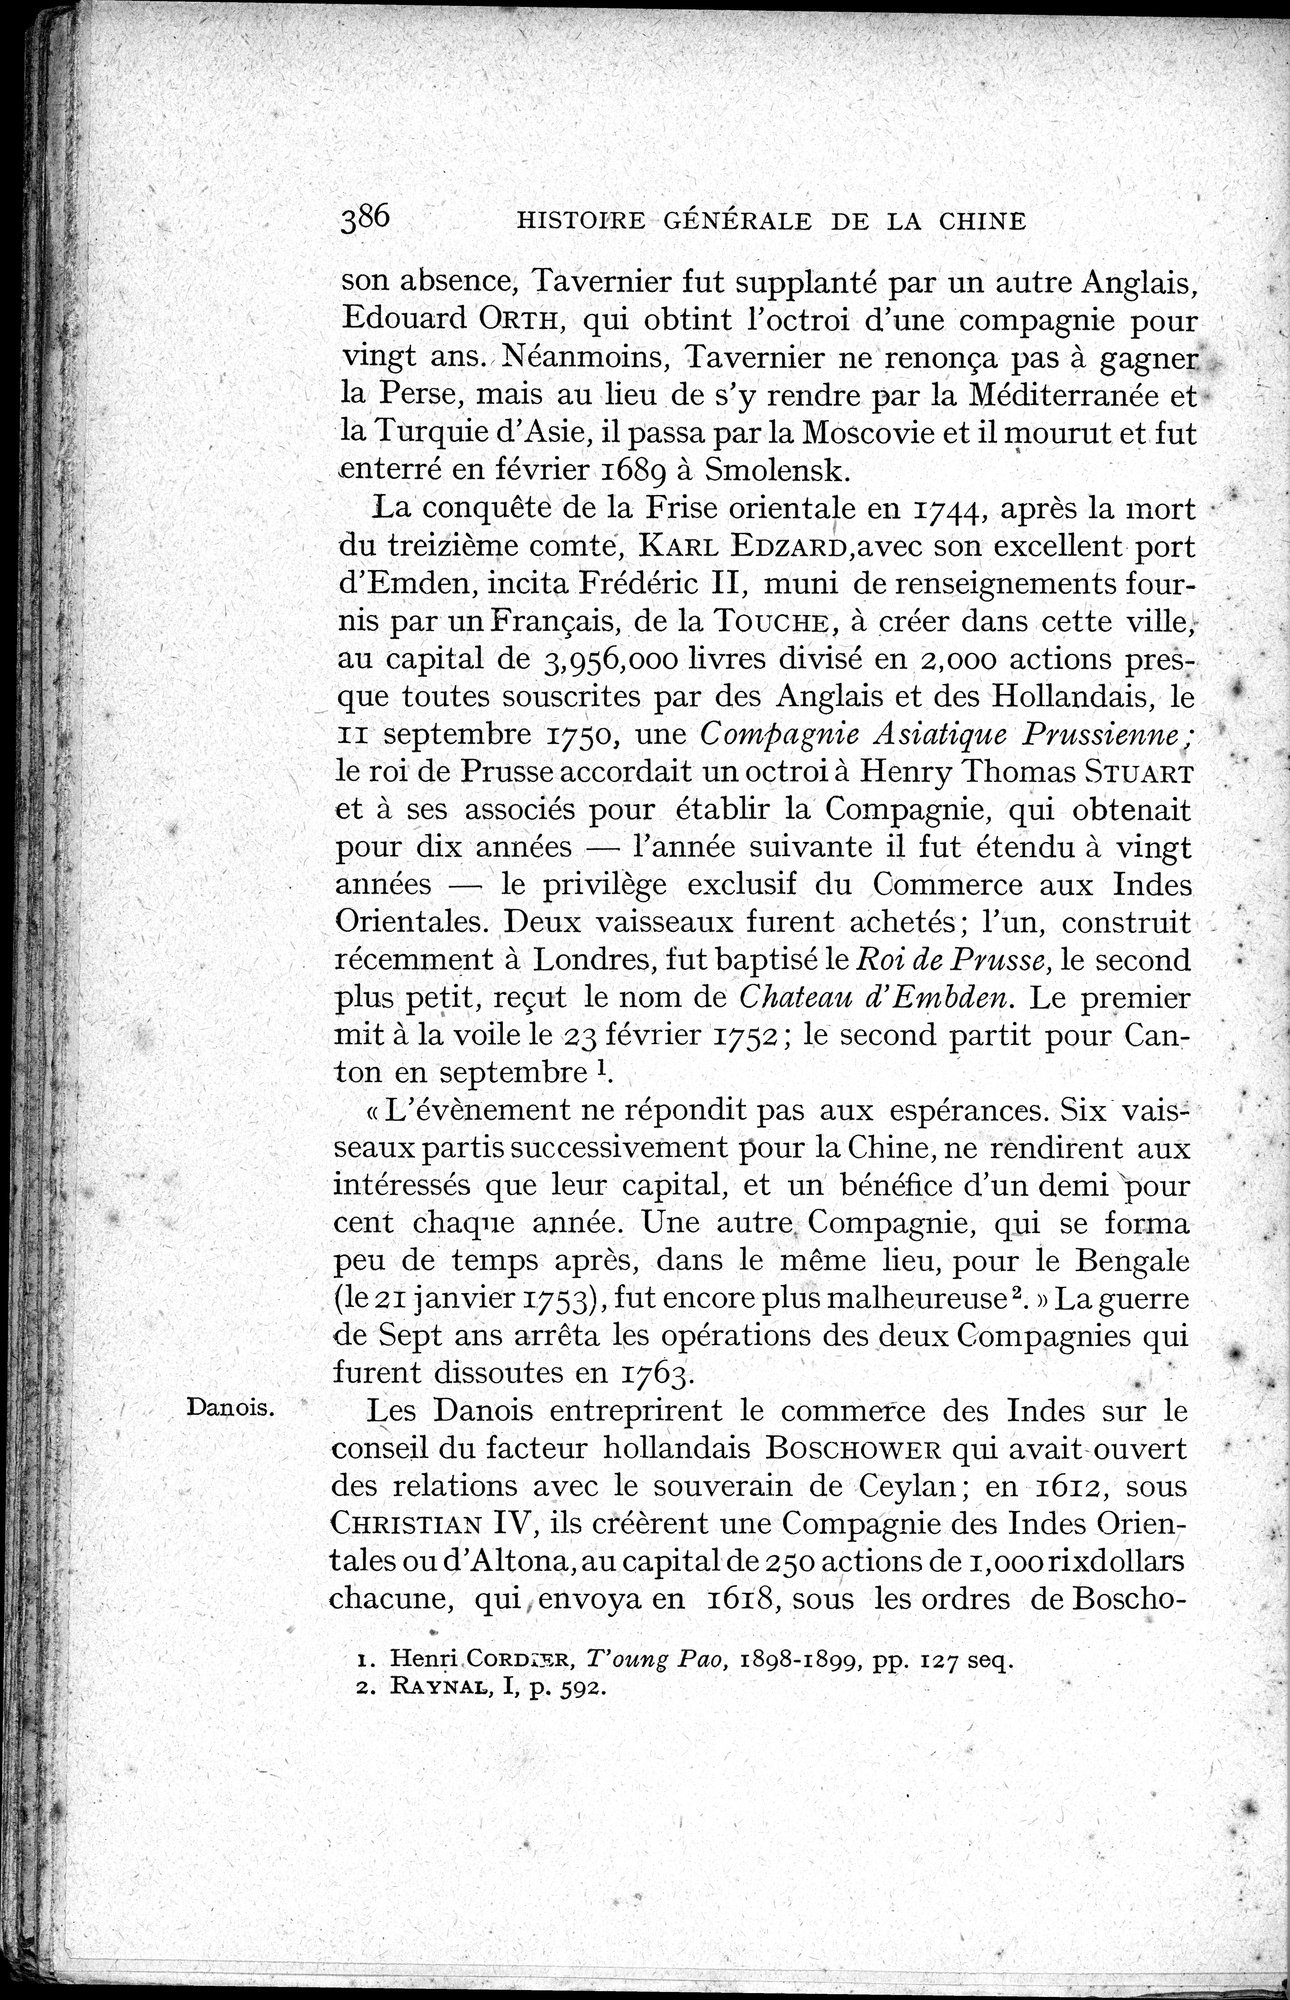 Histoire Générale de la Chine : vol.3 / Page 388 (Grayscale High Resolution Image)